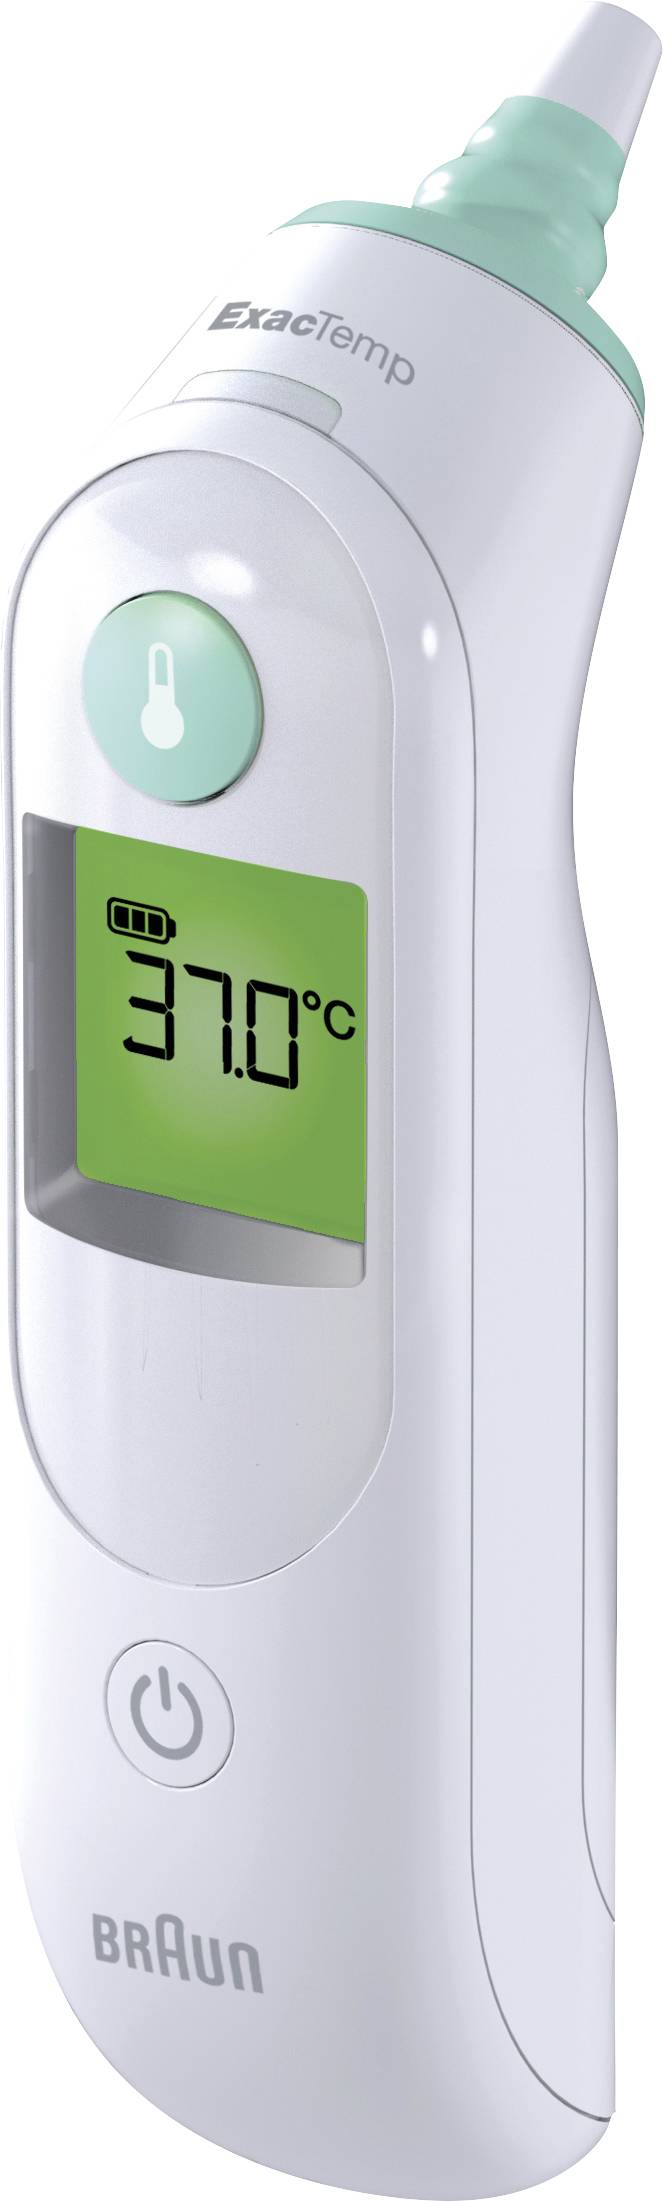 Acquista Braun ThermoScan® 6 Termometro per febbre da Conrad